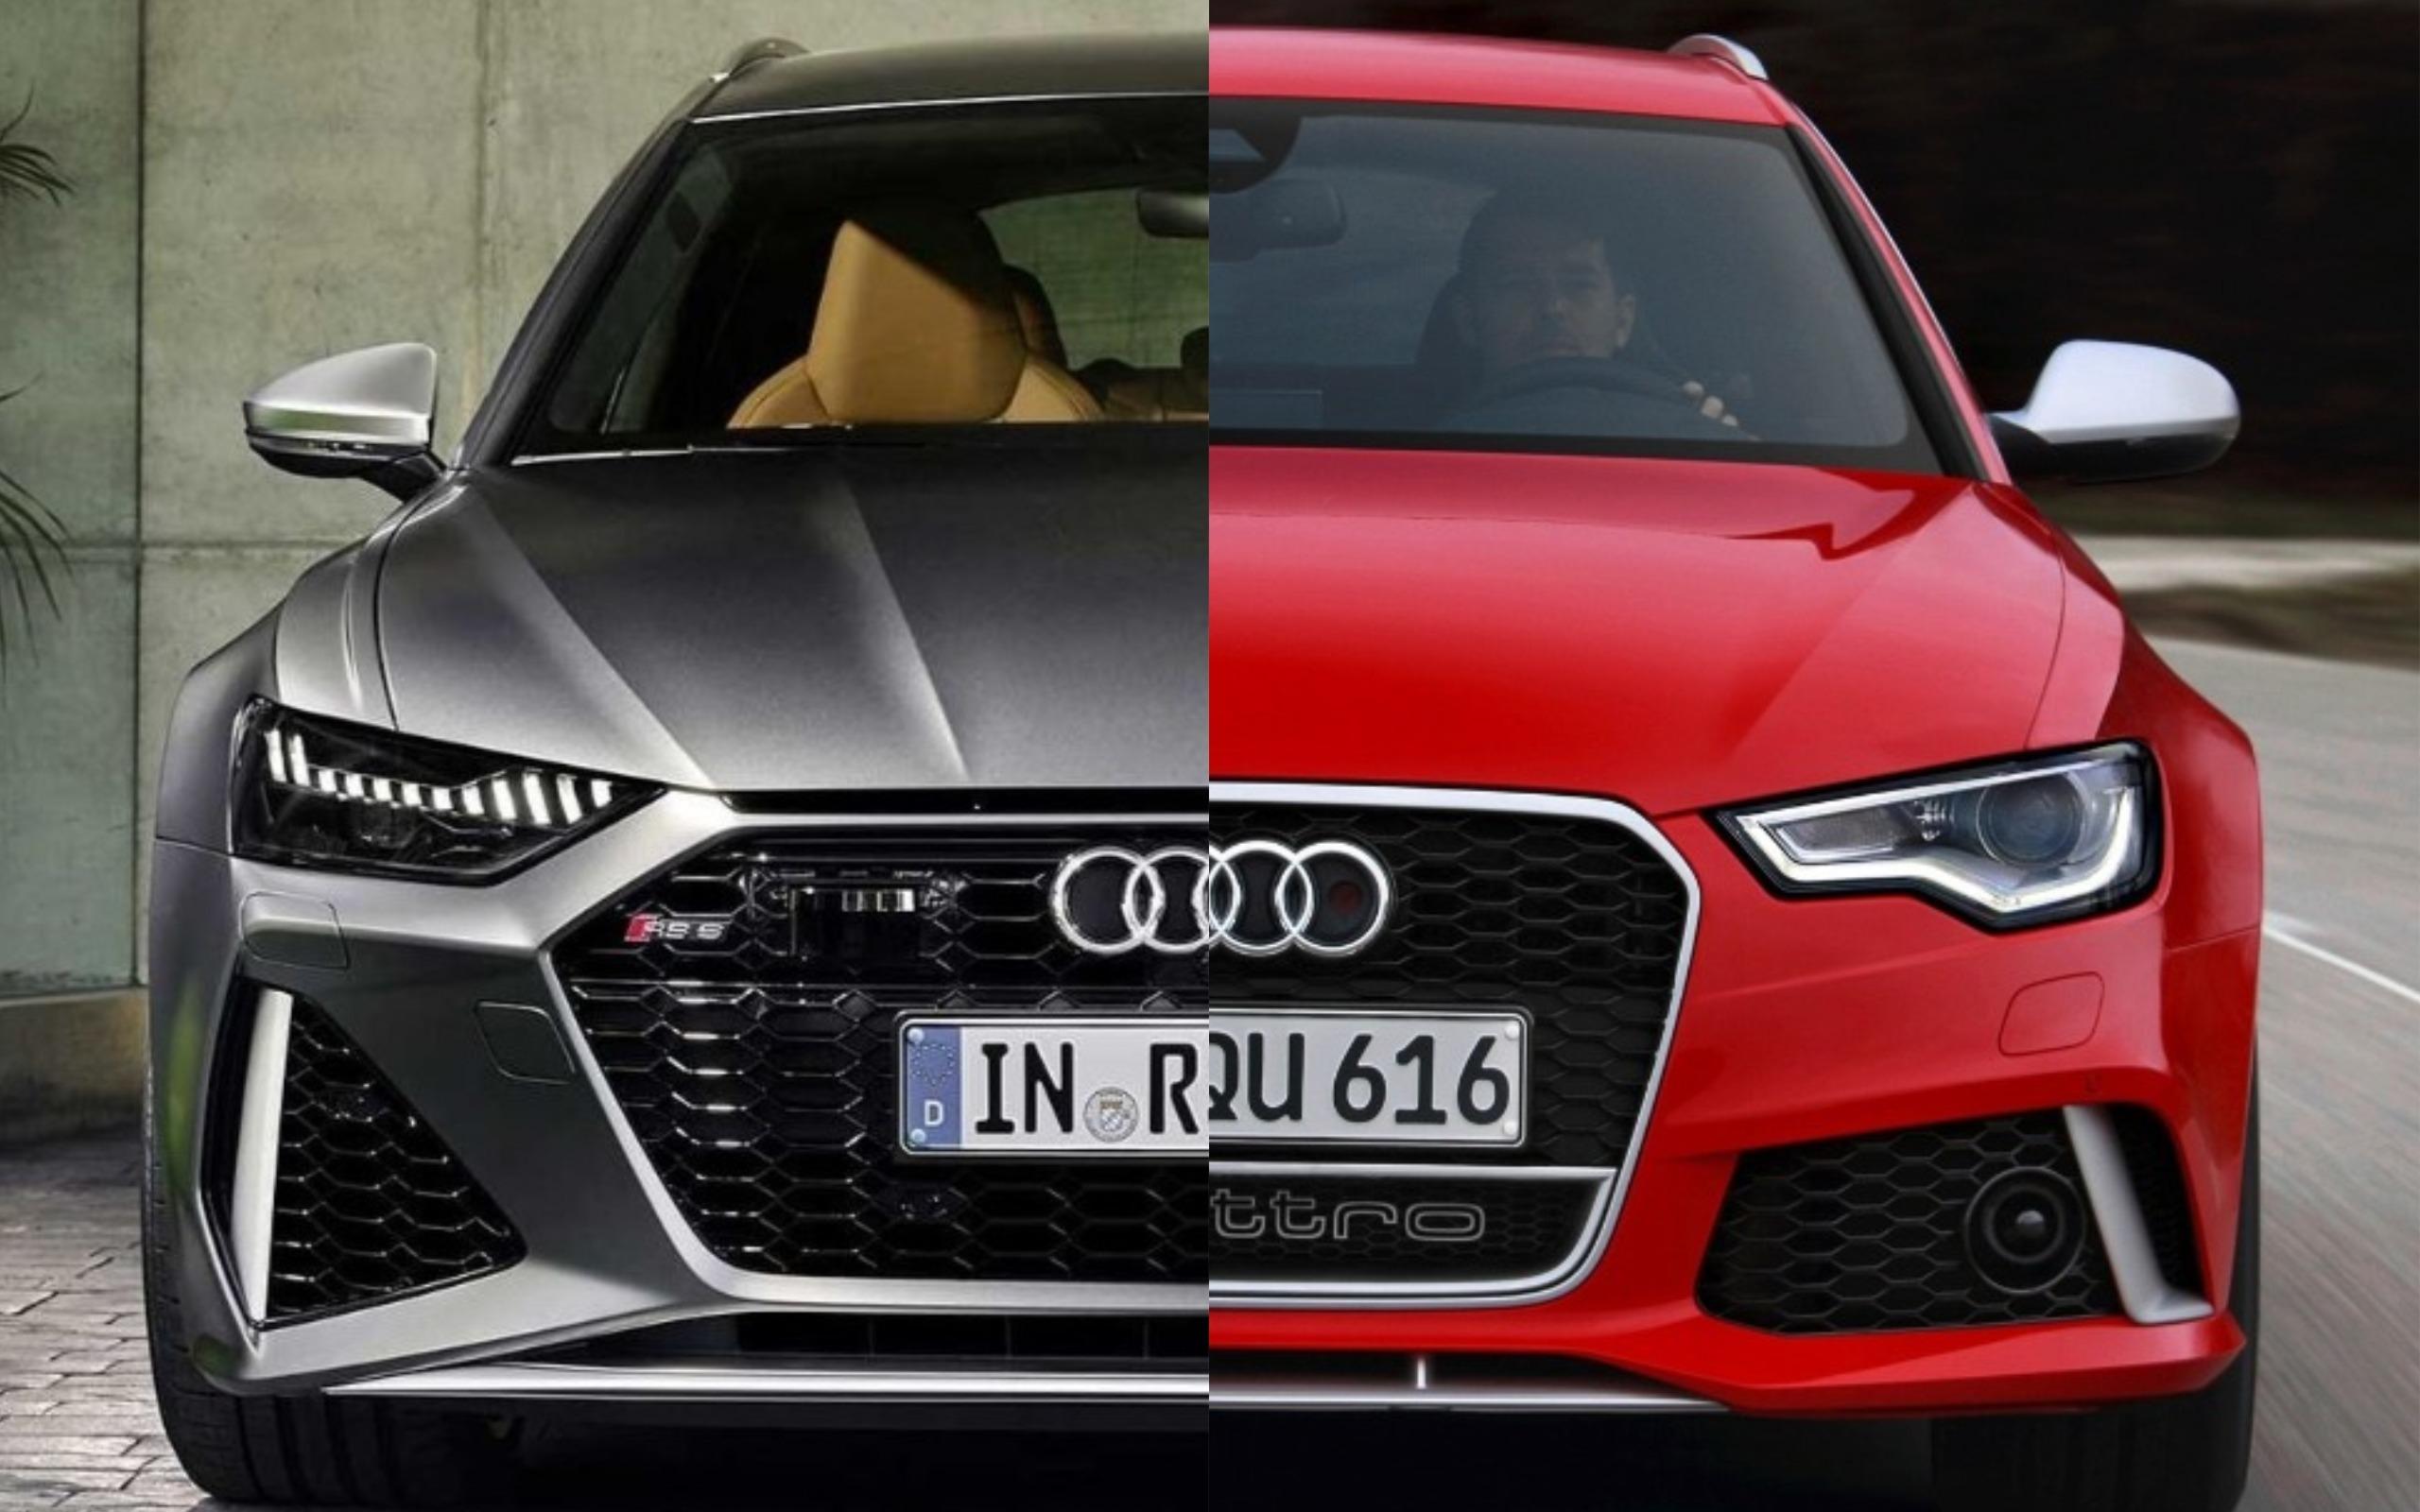 Photo Comparison: 2020 Audi RS6 Avant vs 2013 Audi RS6 Avant